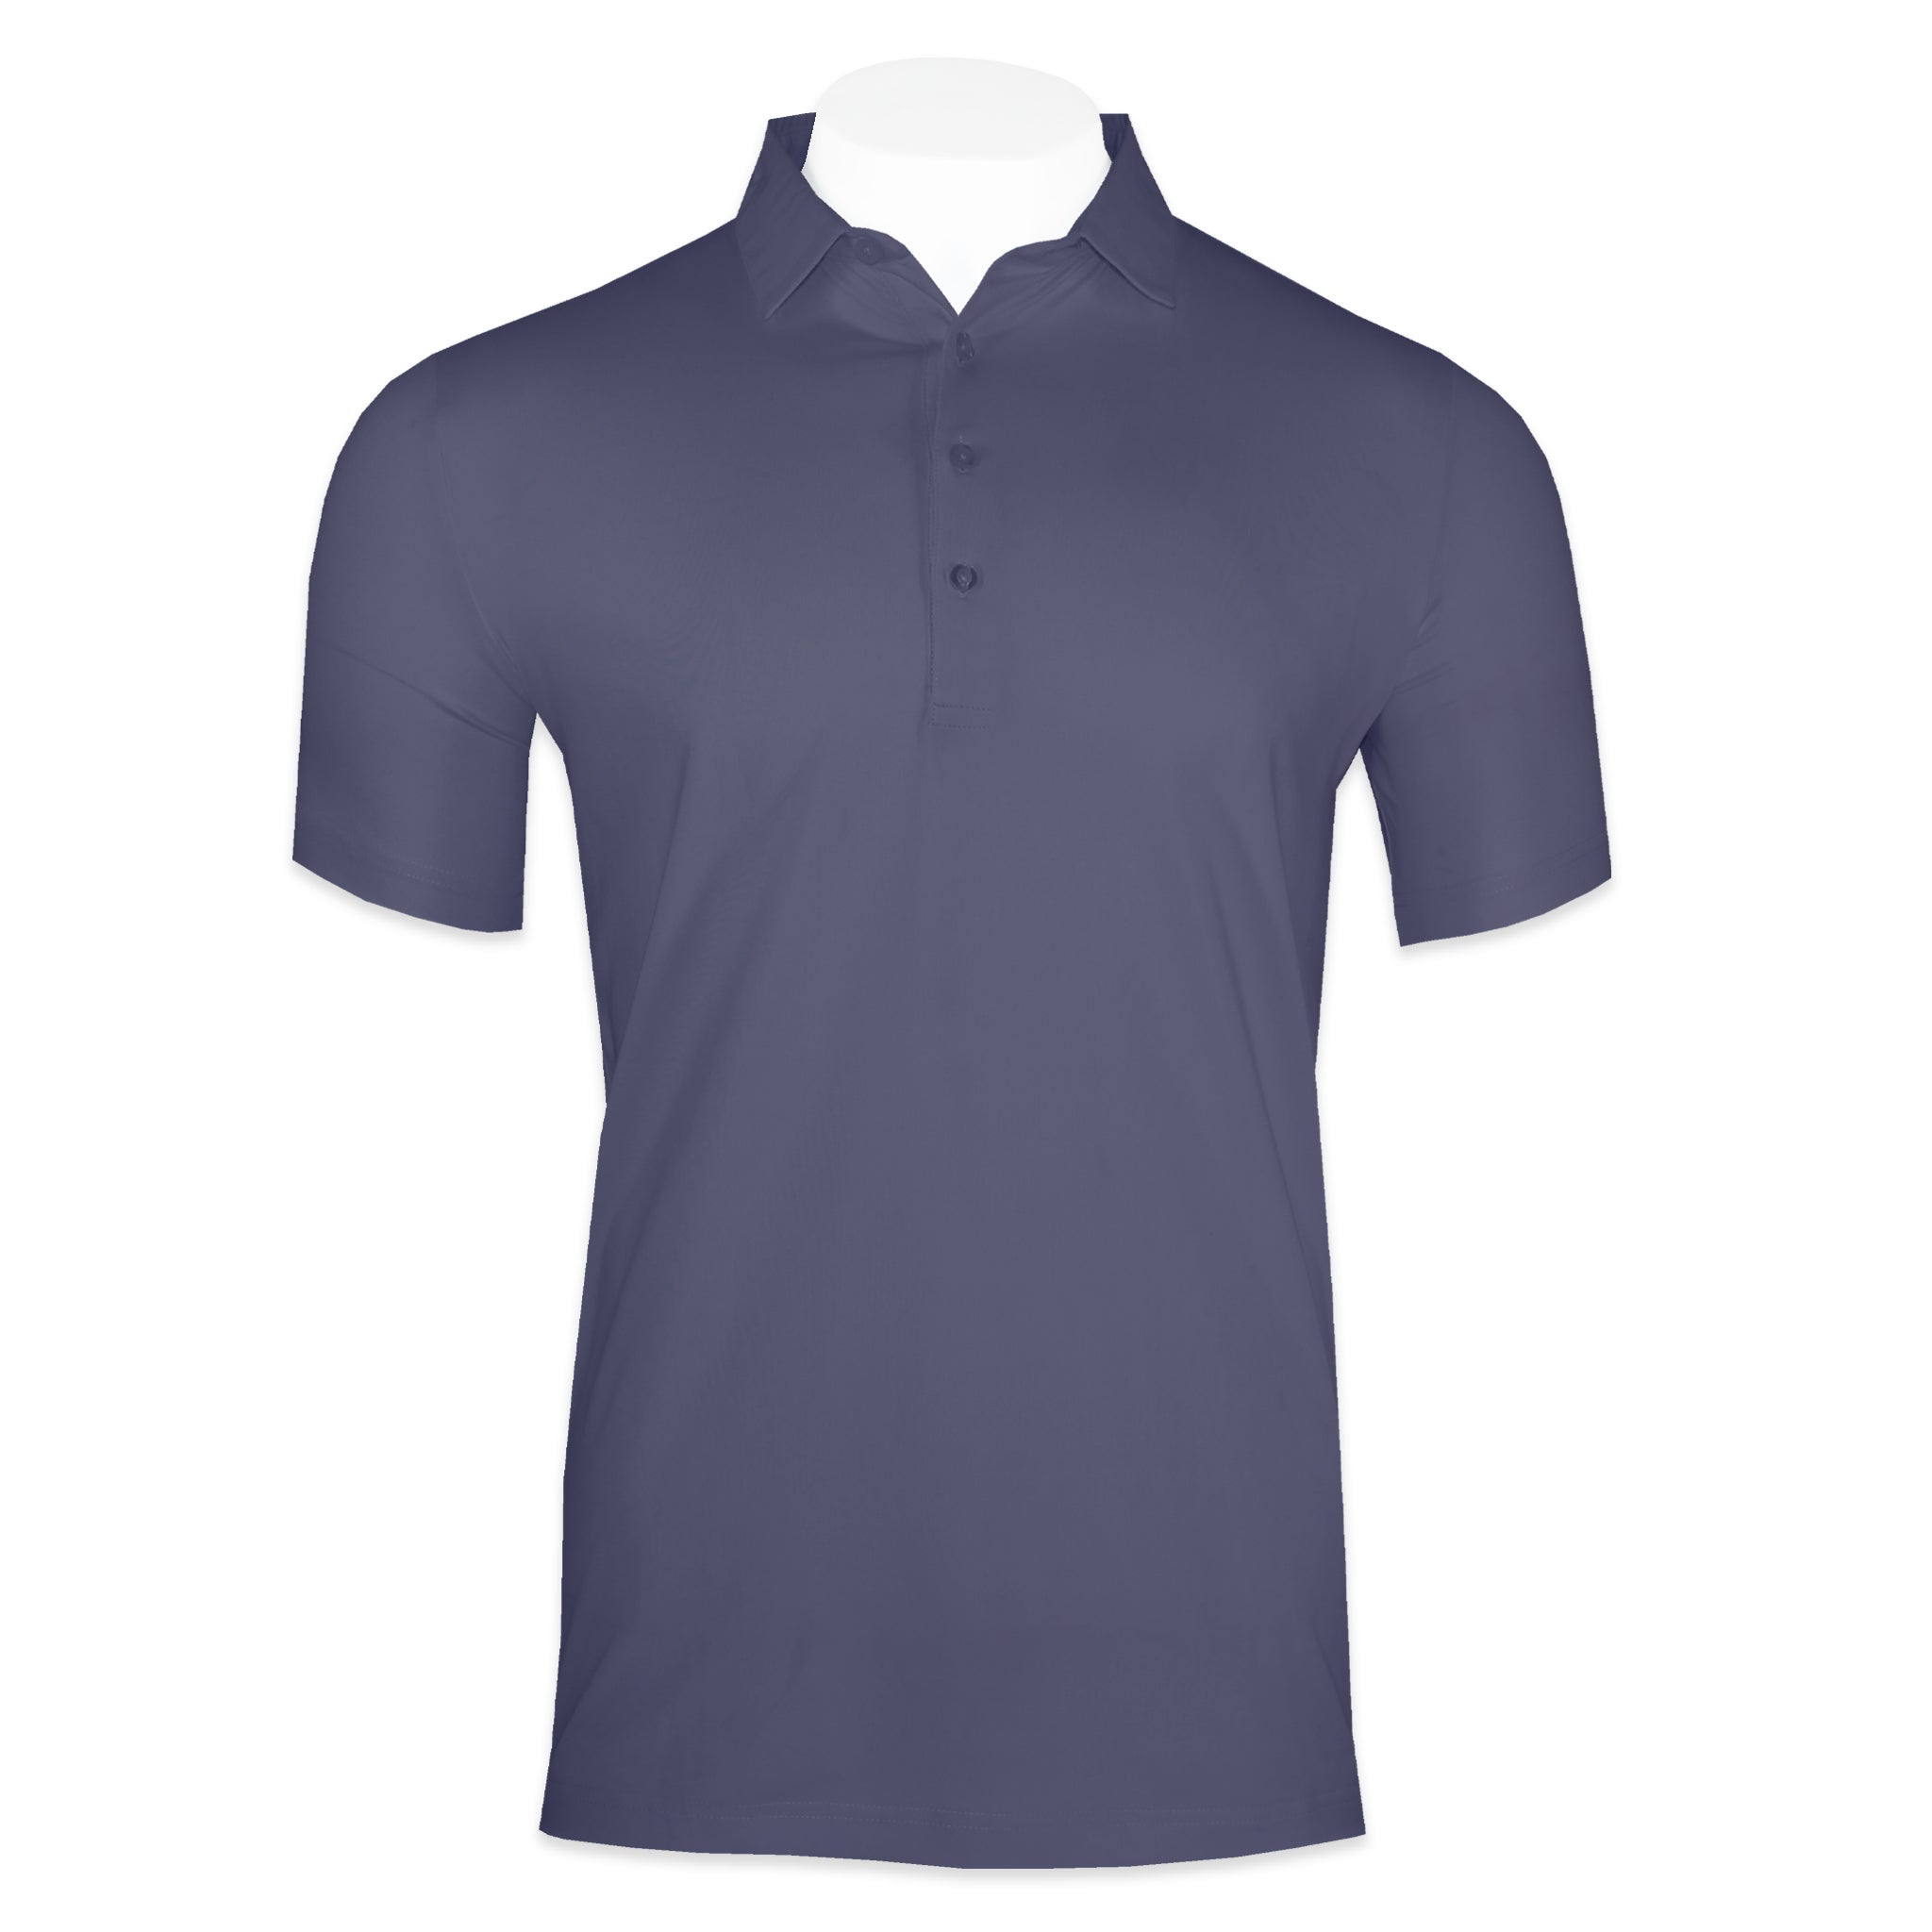 'Mineral' Four Button Golf Shirt